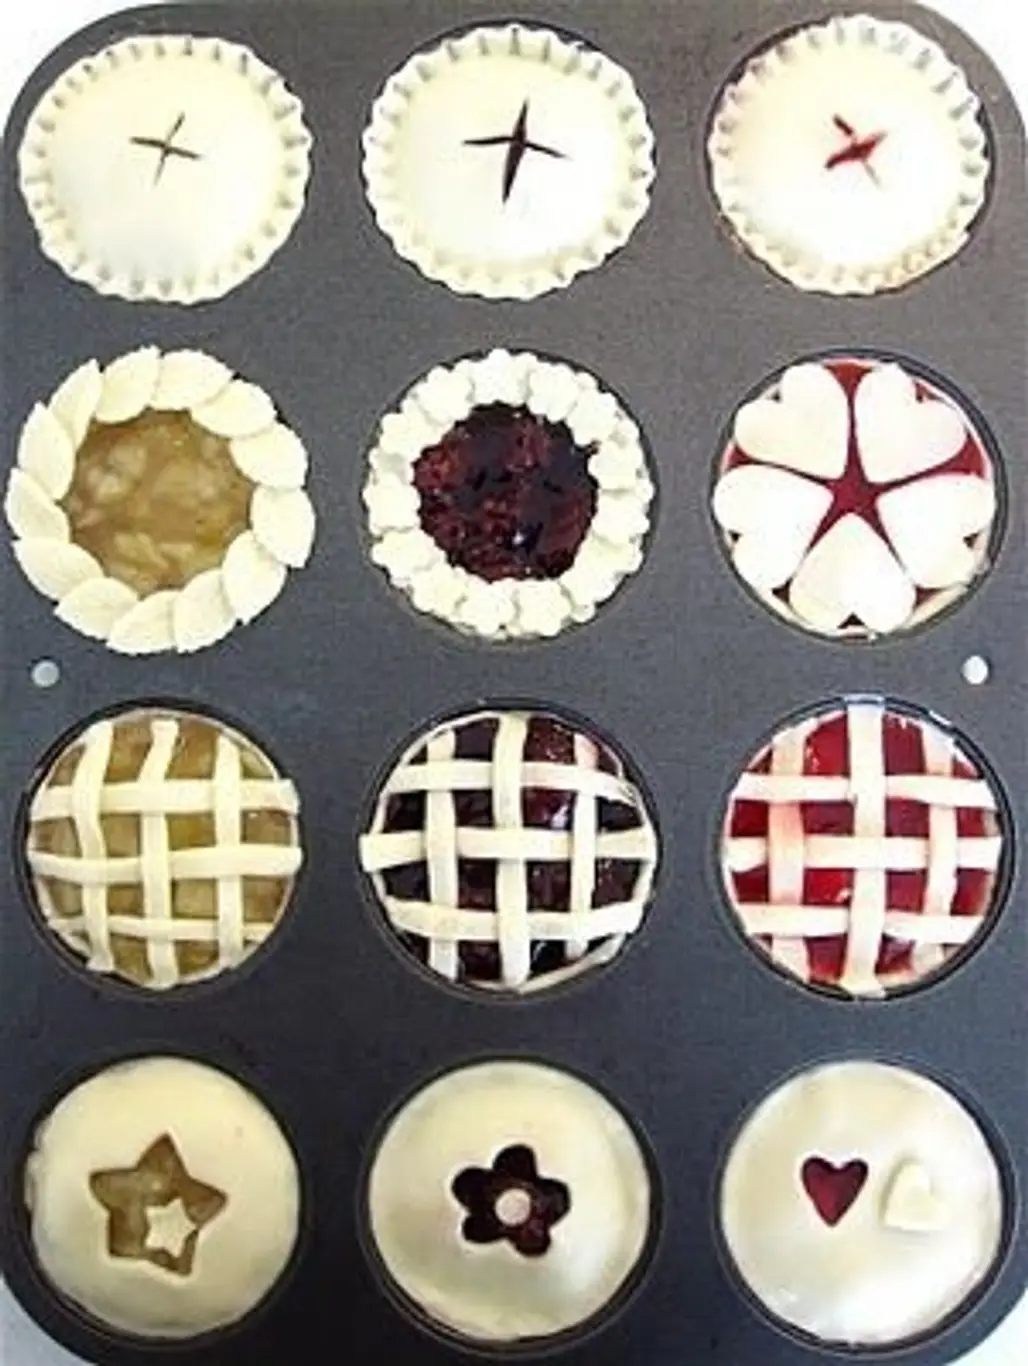 Many Mini Pies